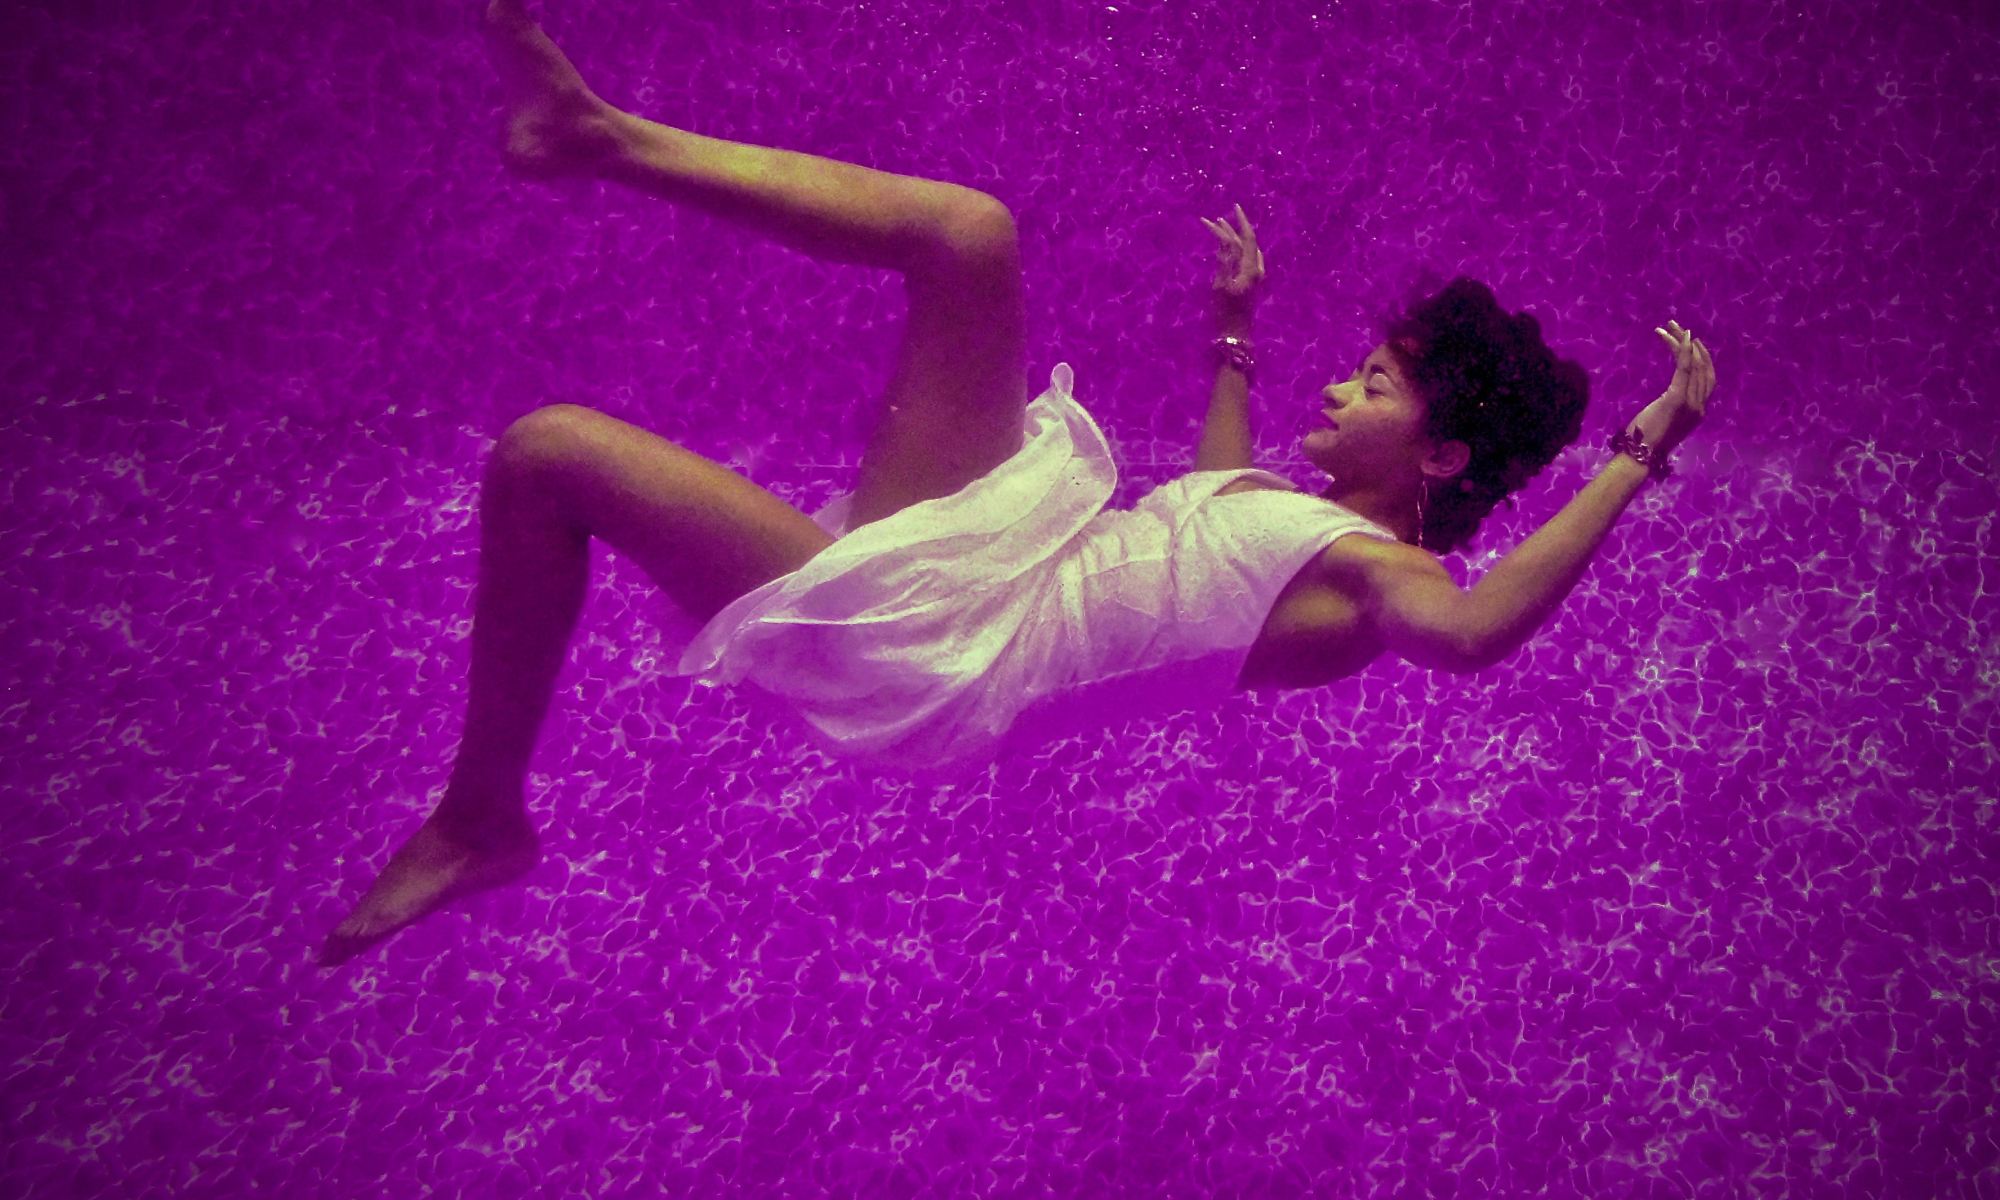 Black woman falling on purple surface in dream